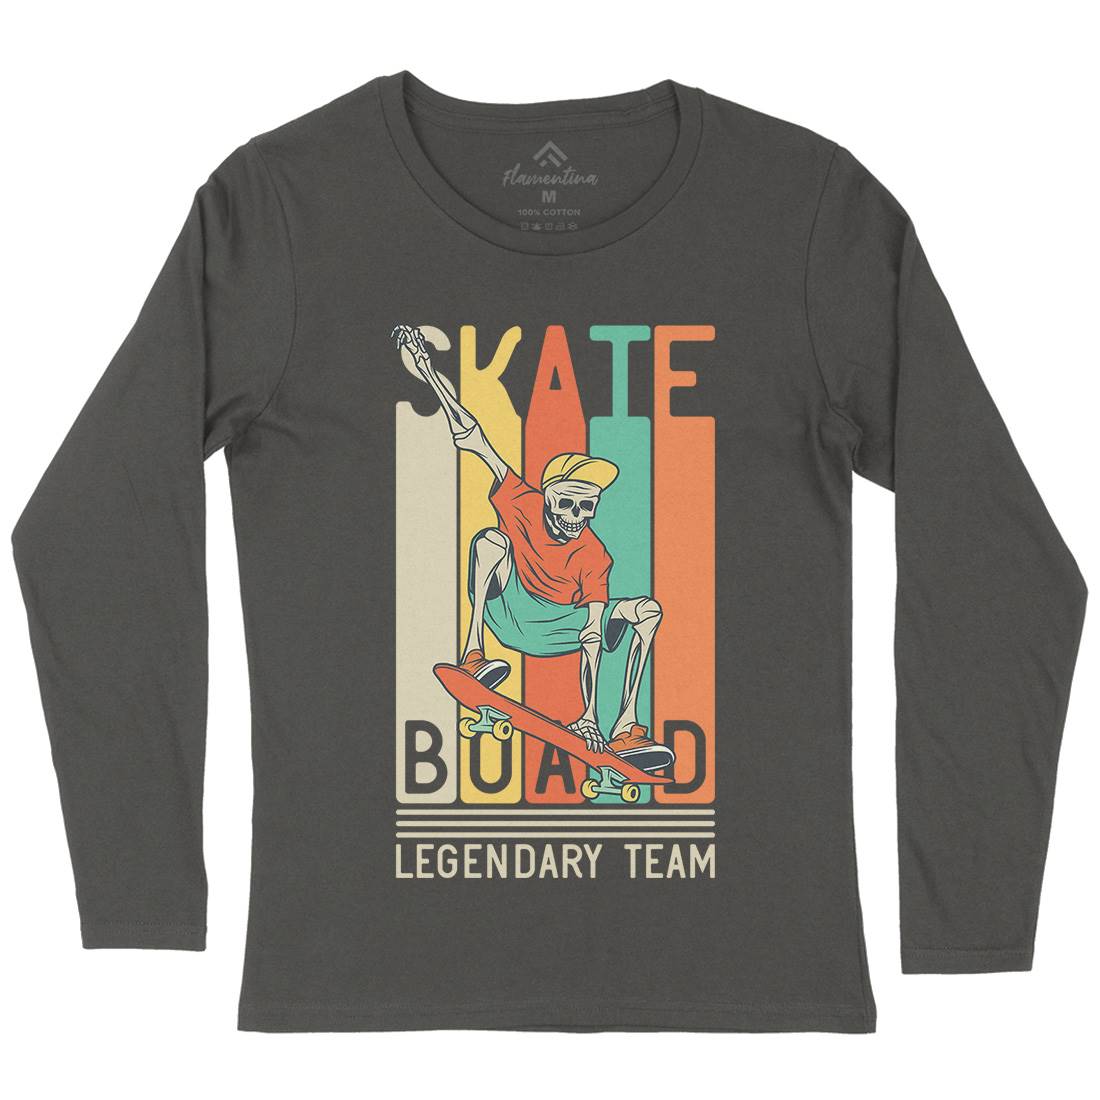 Legendary Team Womens Long Sleeve T-Shirt Skate D952